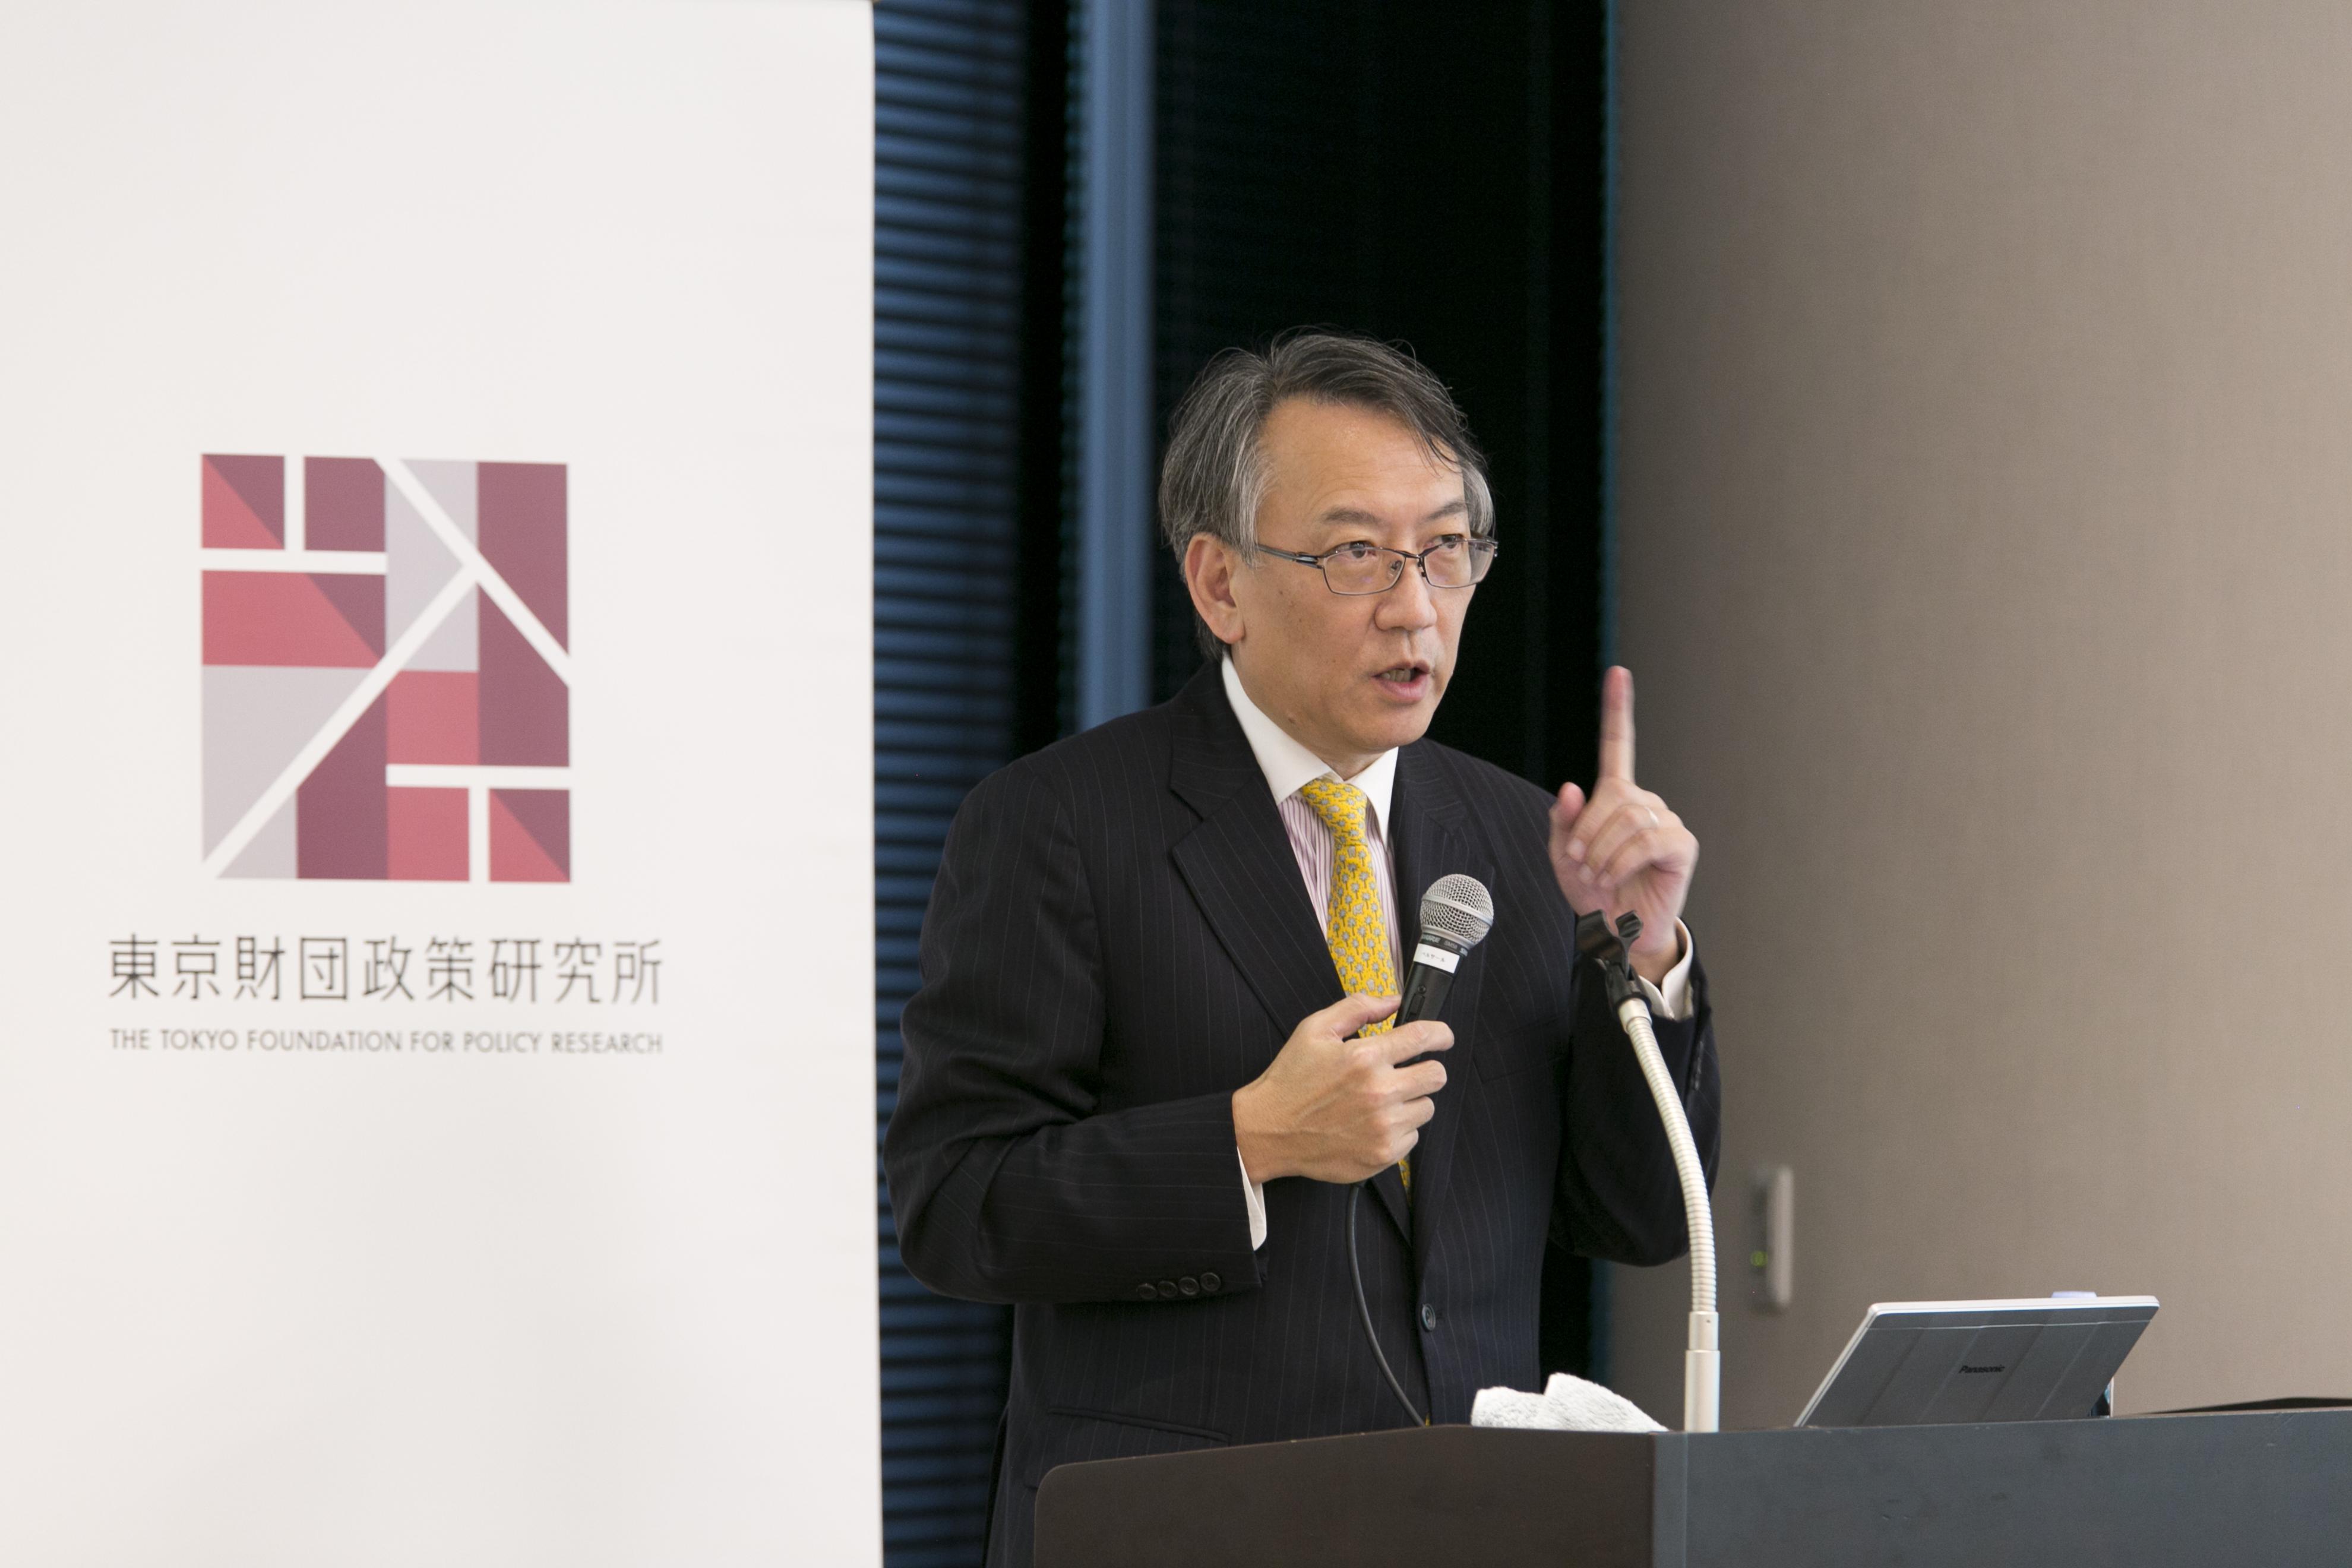 【開催報告】第117回東京財団政策研究所フォーラム「中国の政策決定メカニズム」